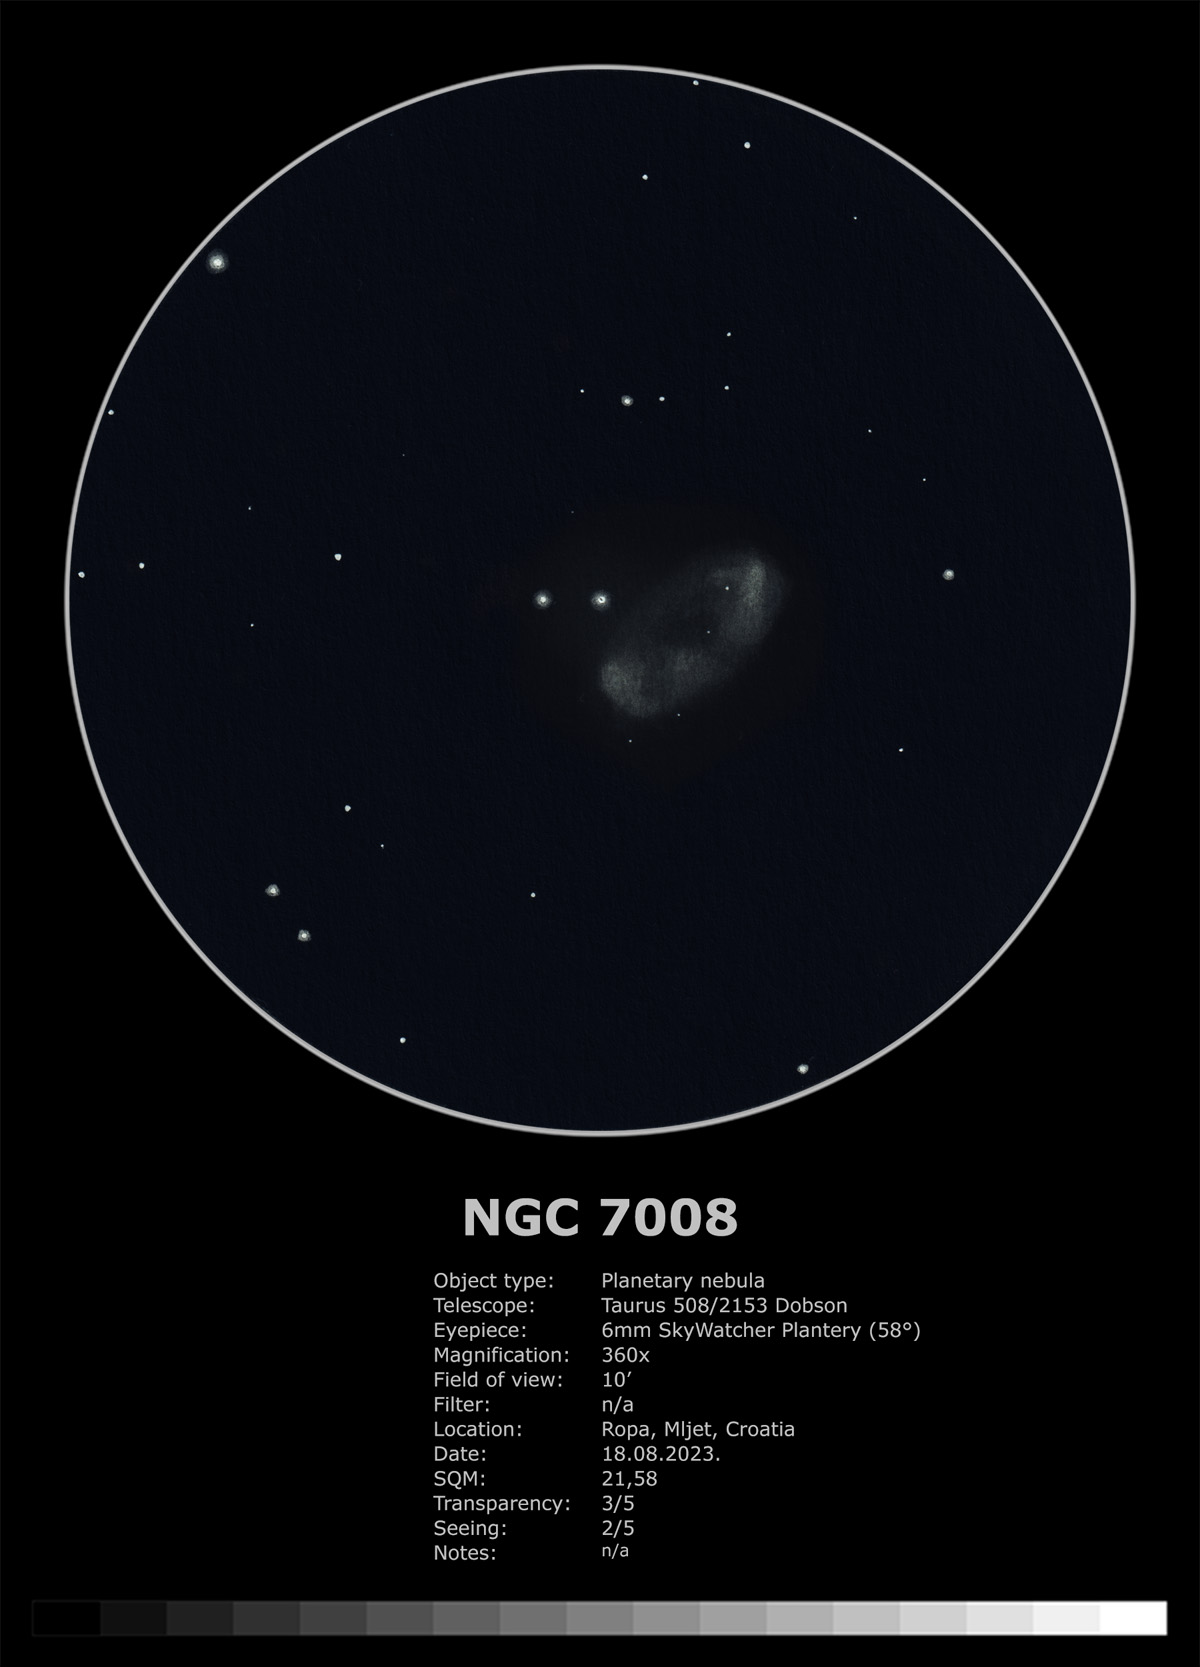 Sketch of NGC 7008 "Fetus" planetary nebula